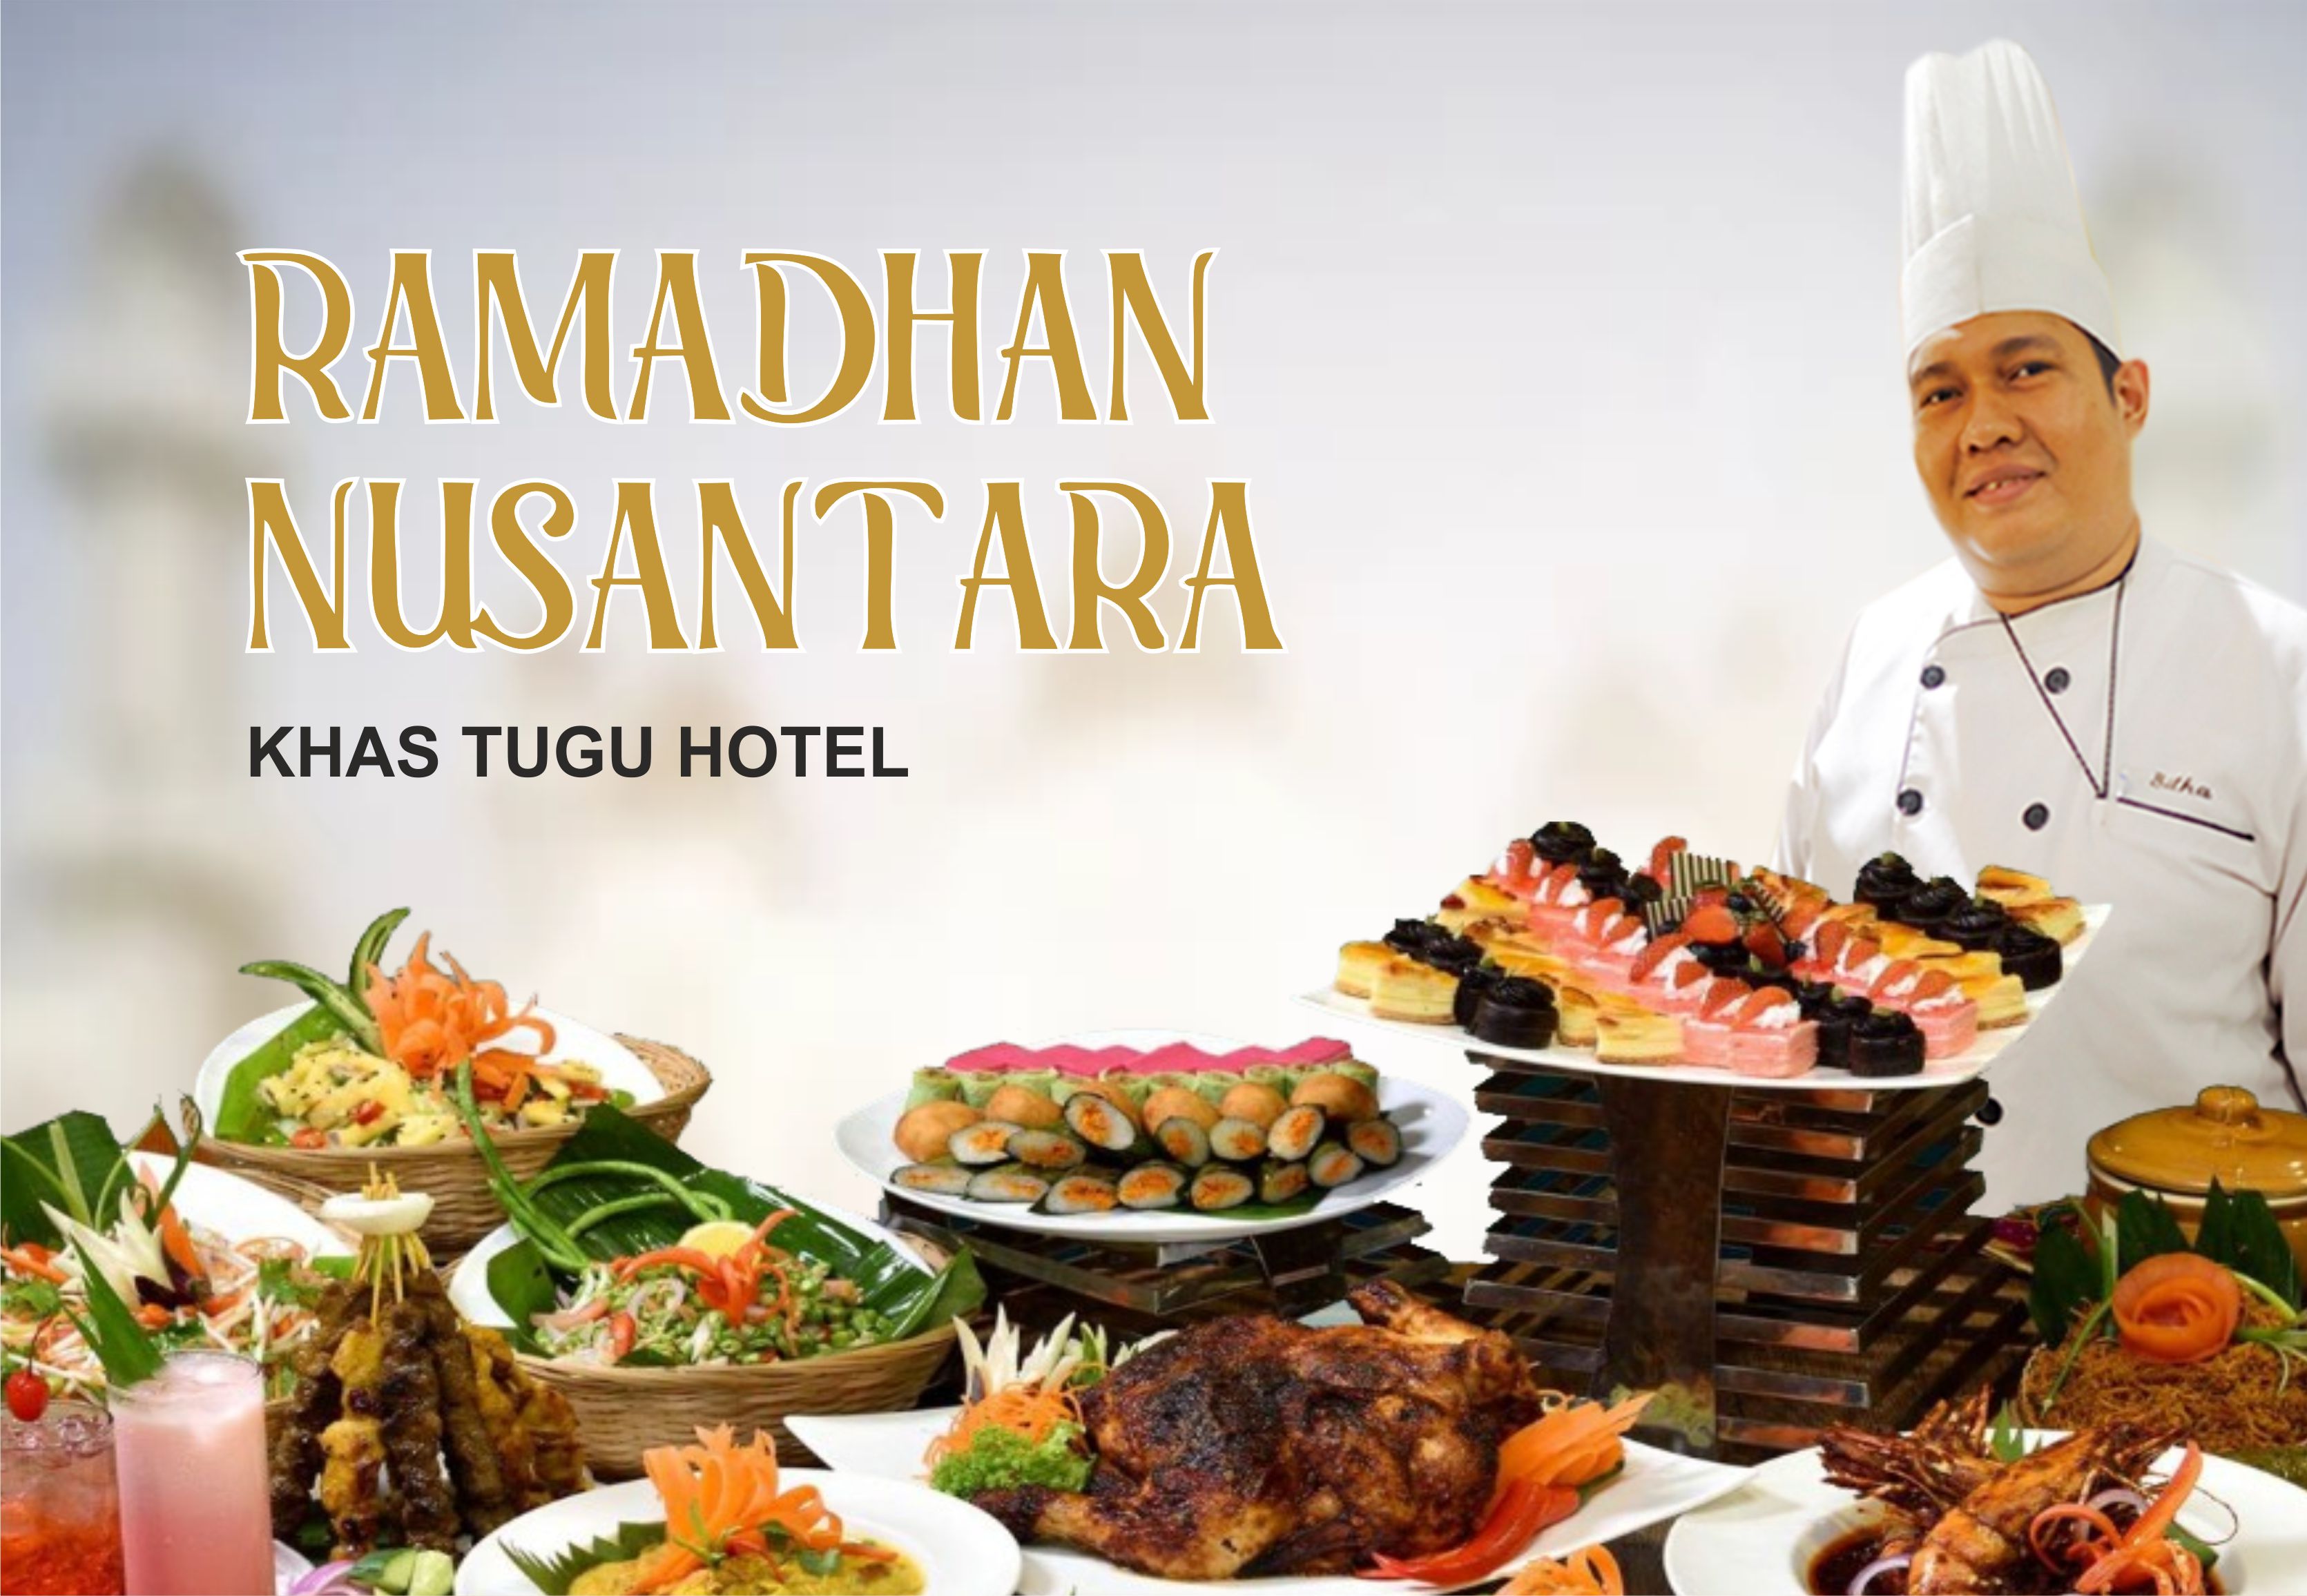 Inframe Chef Bilha - Executive Sous Chef KHAS Tugu Hotel<br>